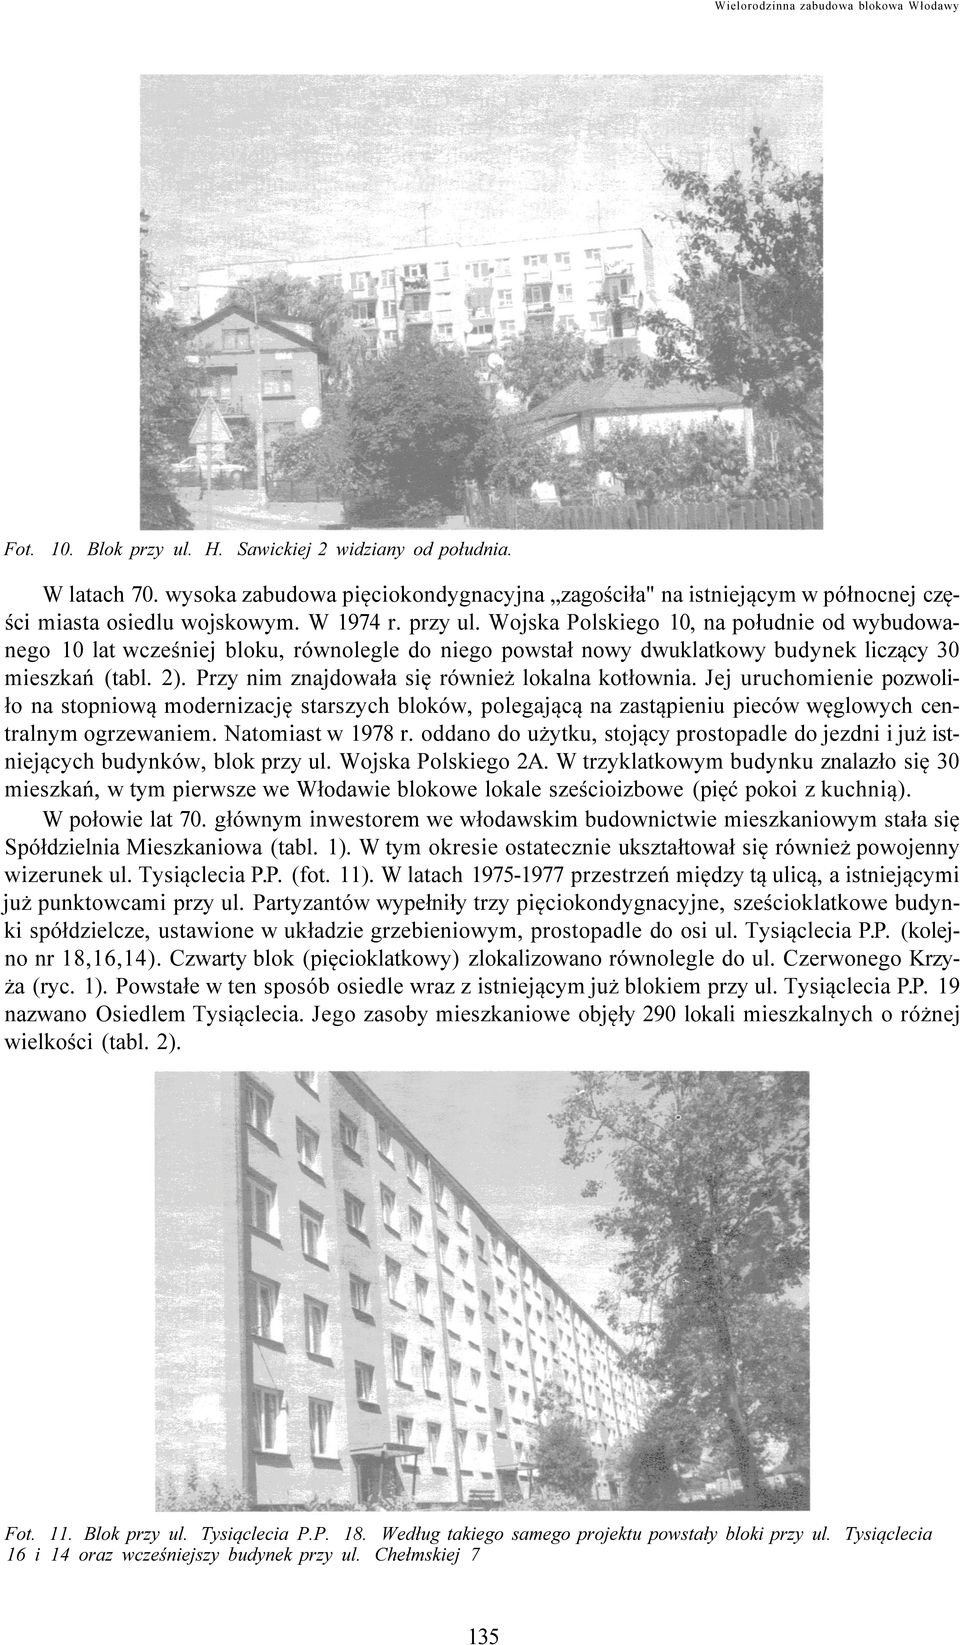 Wojska Polskiego 10, na południe od wybudowanego 10 lat wcześniej bloku, równolegle do niego powstał nowy dwuklatkowy budynek liczący 30 mieszkań (tabl. 2).